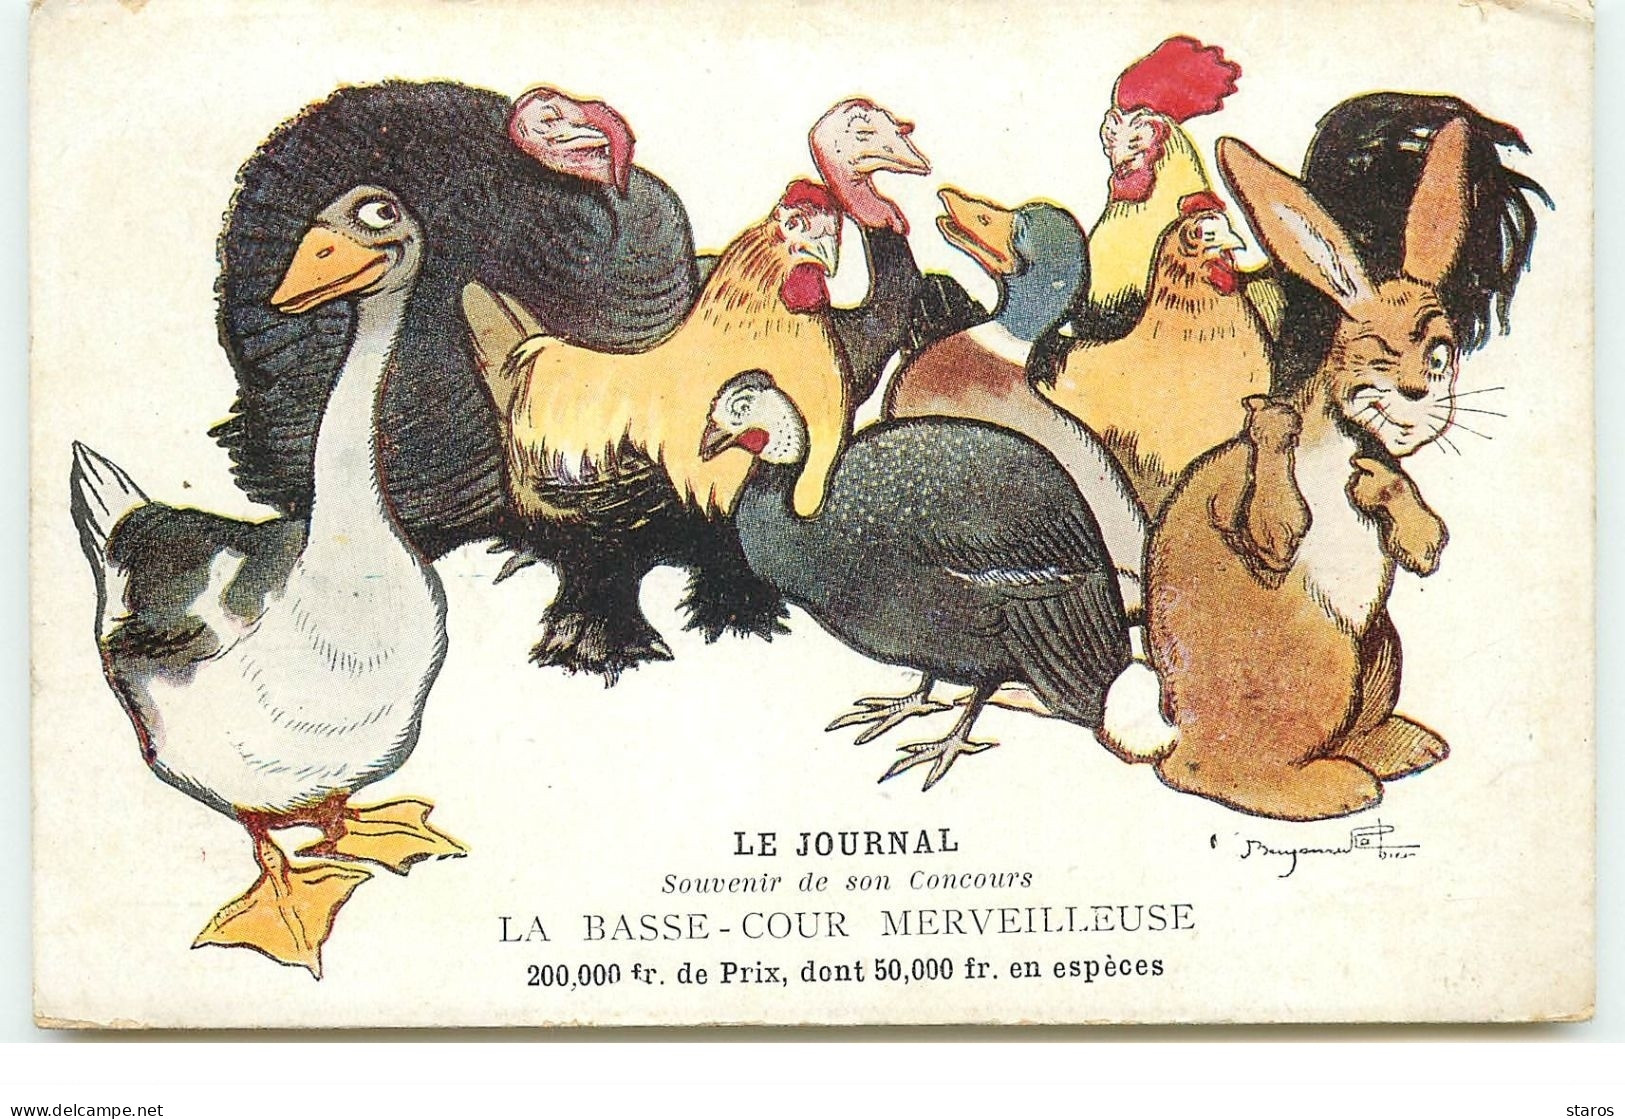 Benjamin Rabier - Le Journal - Souvenir De Son Concours - La Basse-Cour Merveilleuse - Rabier, B.